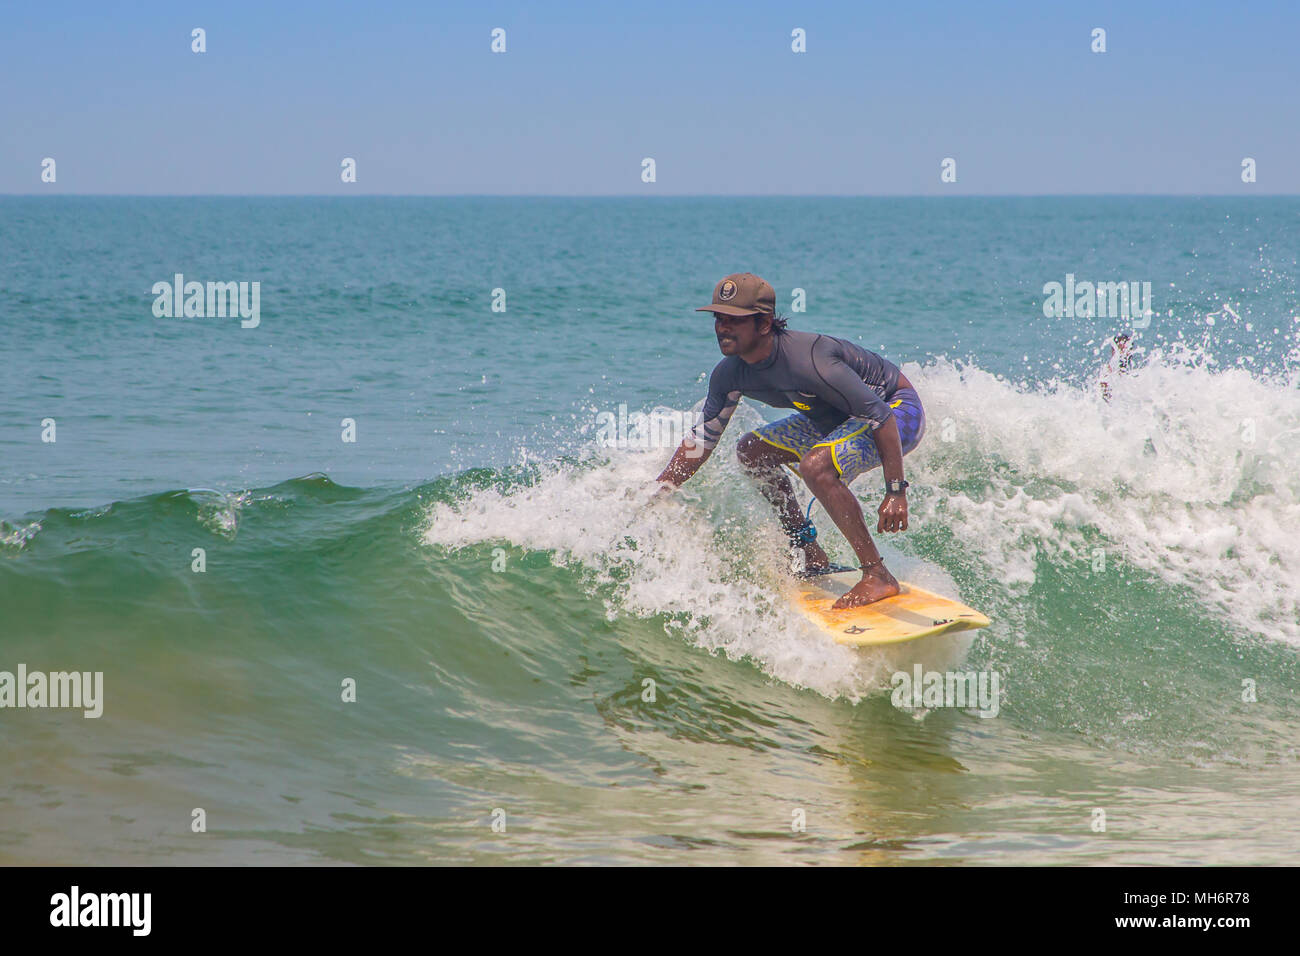 Velu, uno de Indias primer pro surfers, coger una ola en Agonda, Goa, donde tiene su escuela de surf. Foto de stock